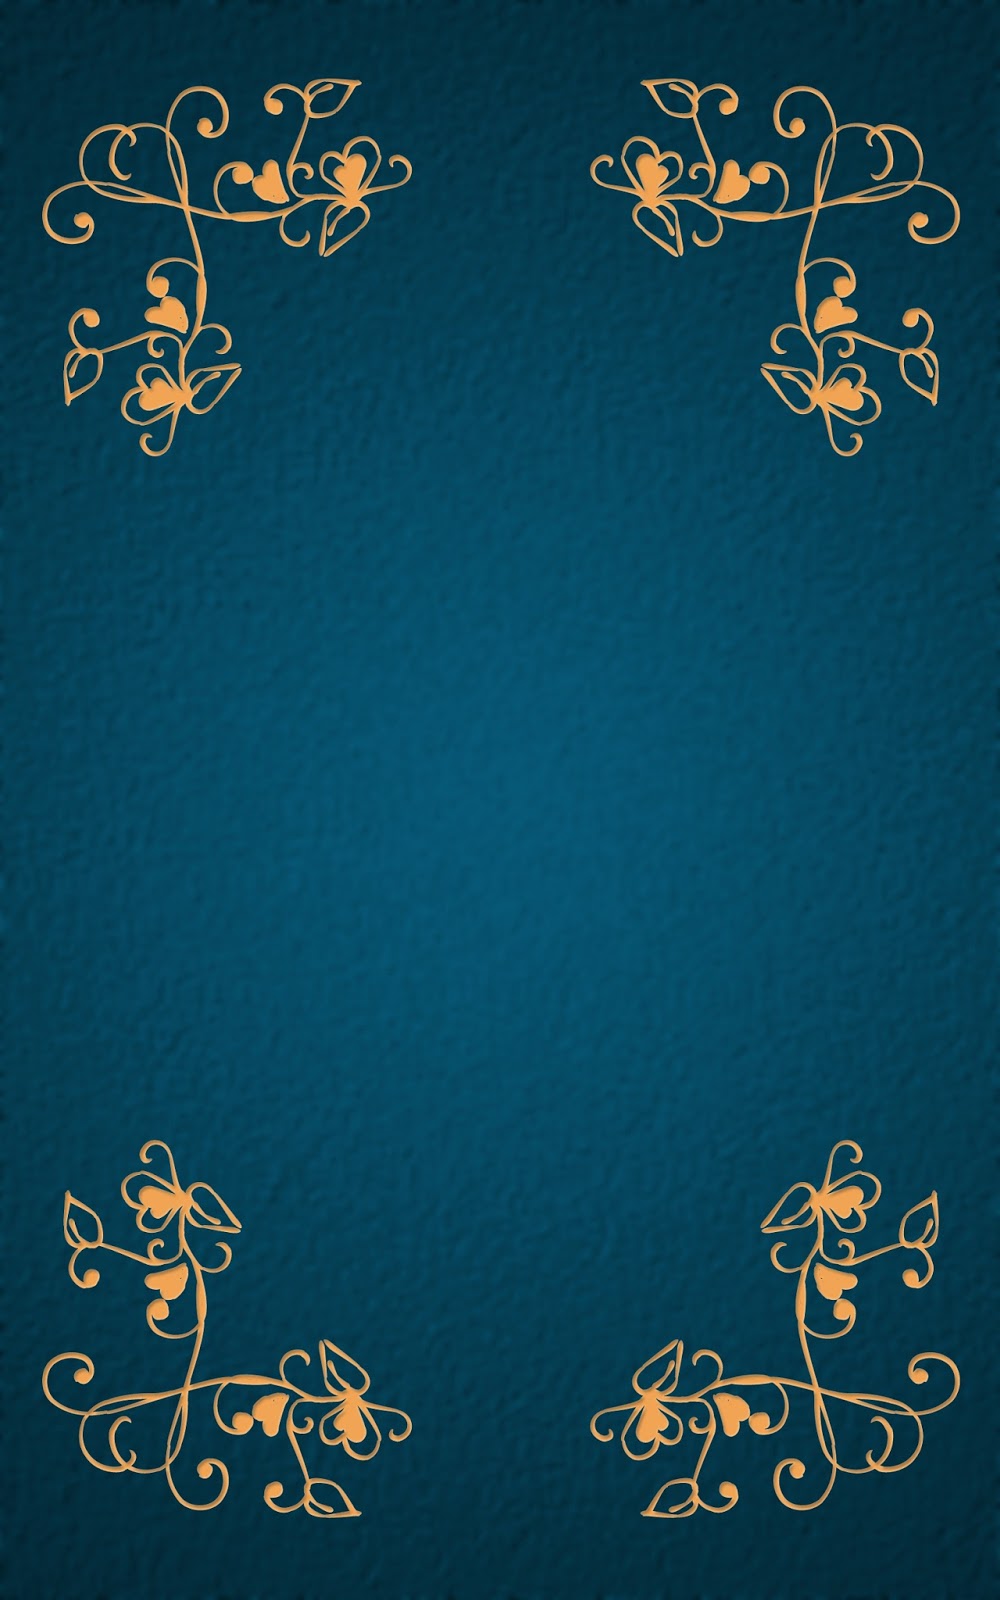 いーブックデザイン 電子書籍用表紙画像フリー素材 008 飾り罫 青